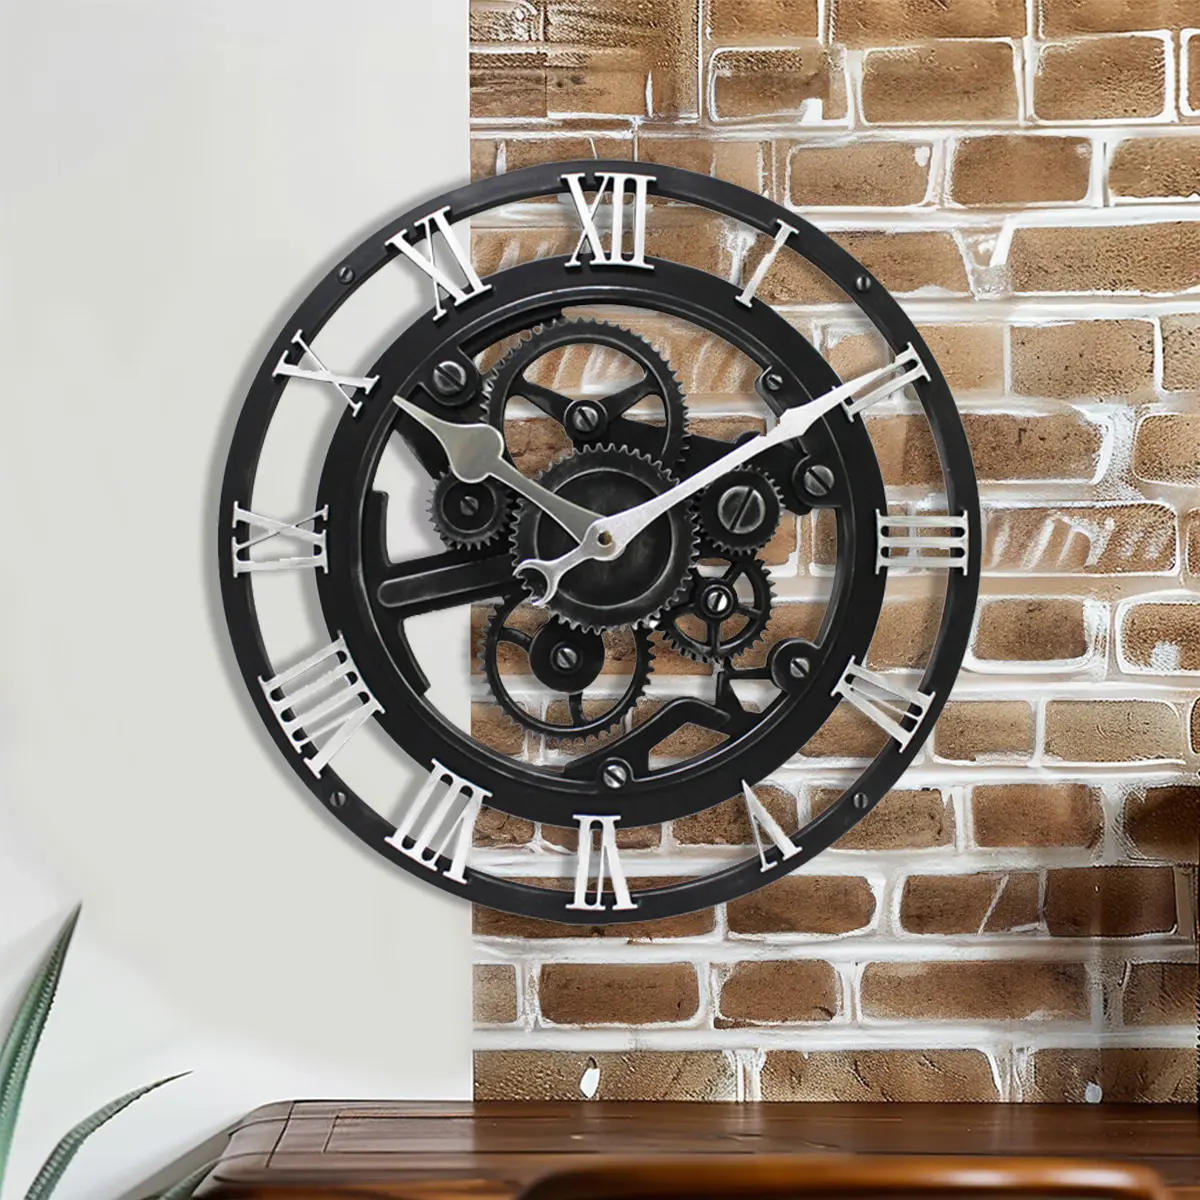 14 "Vintage Punk tarzı endüstriyel dişli saatler Roman sayısal sanat dekoratif duvar saati